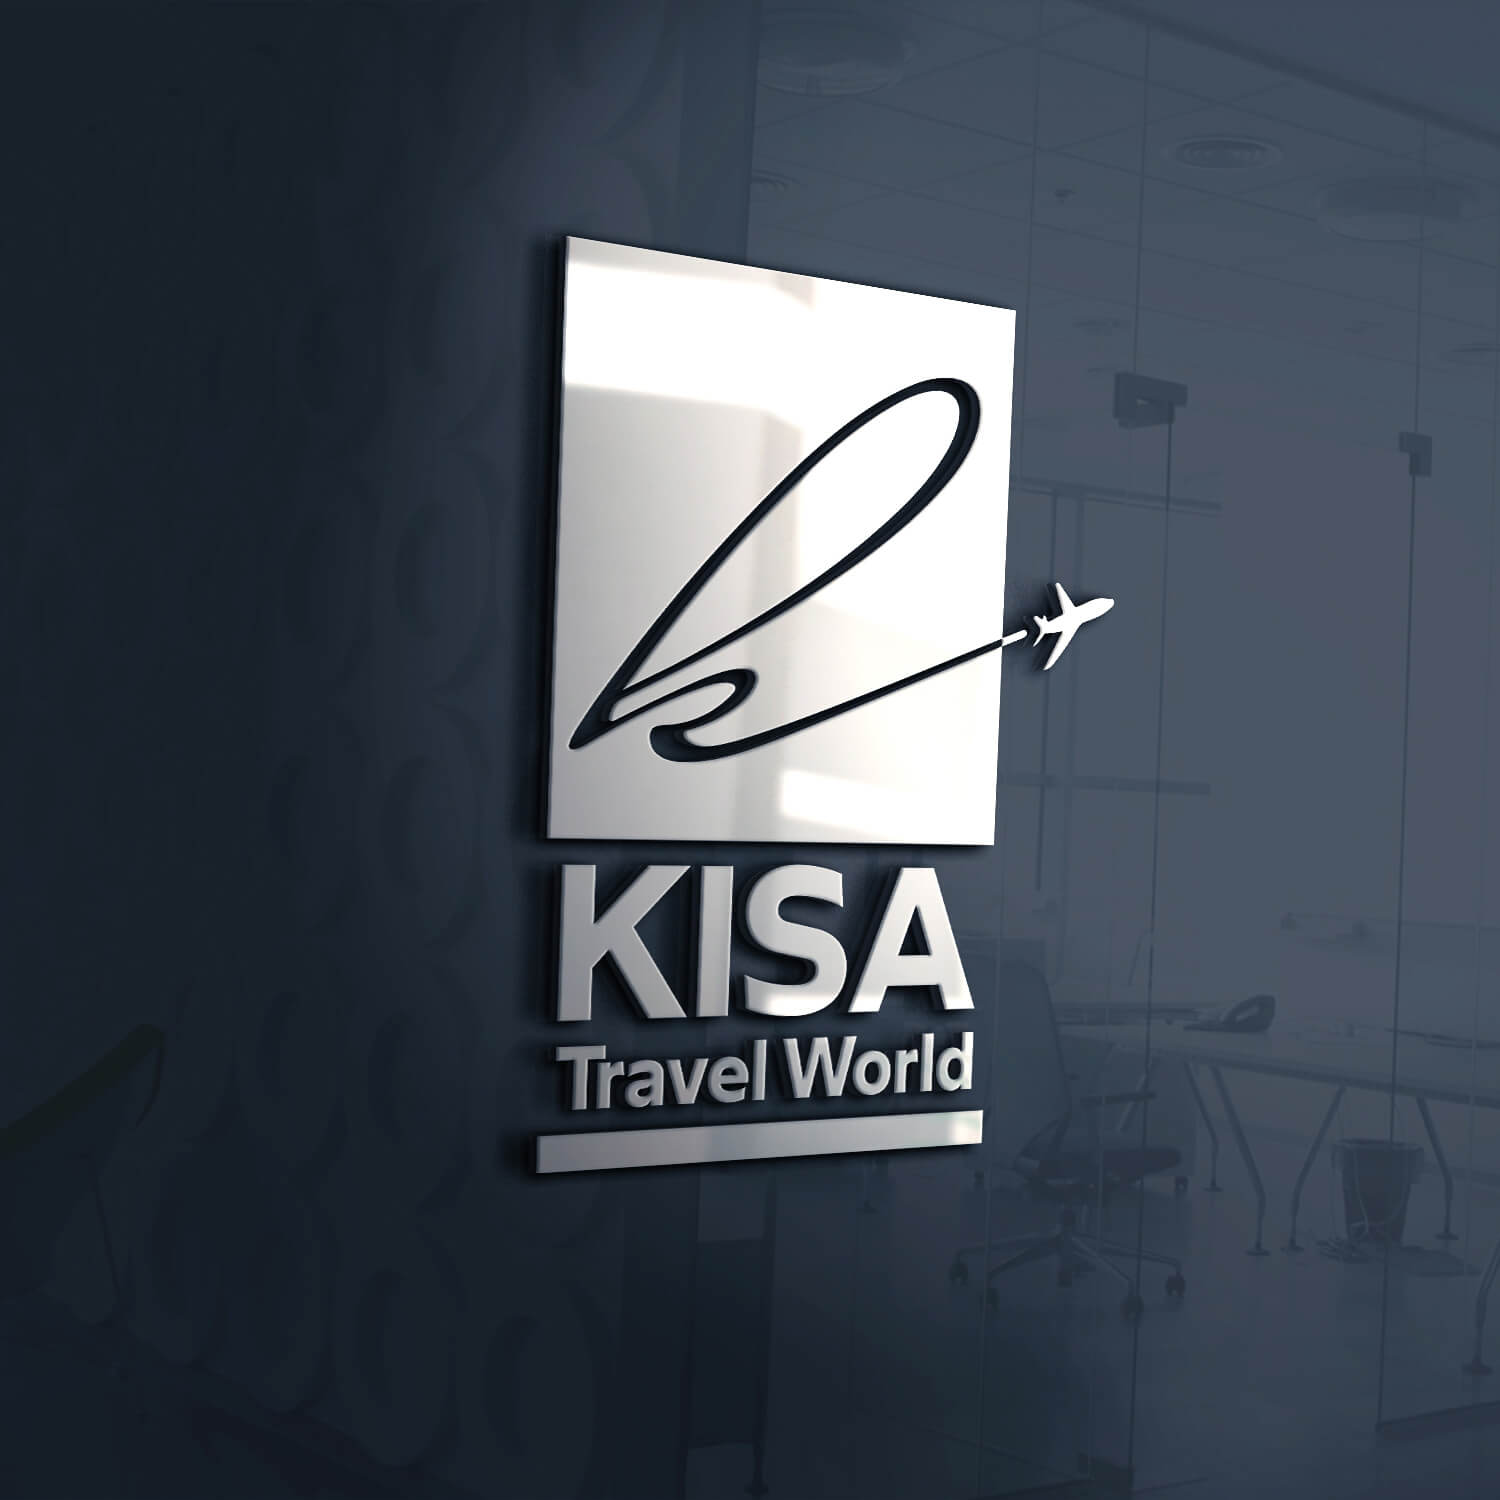 Kisa Travel World